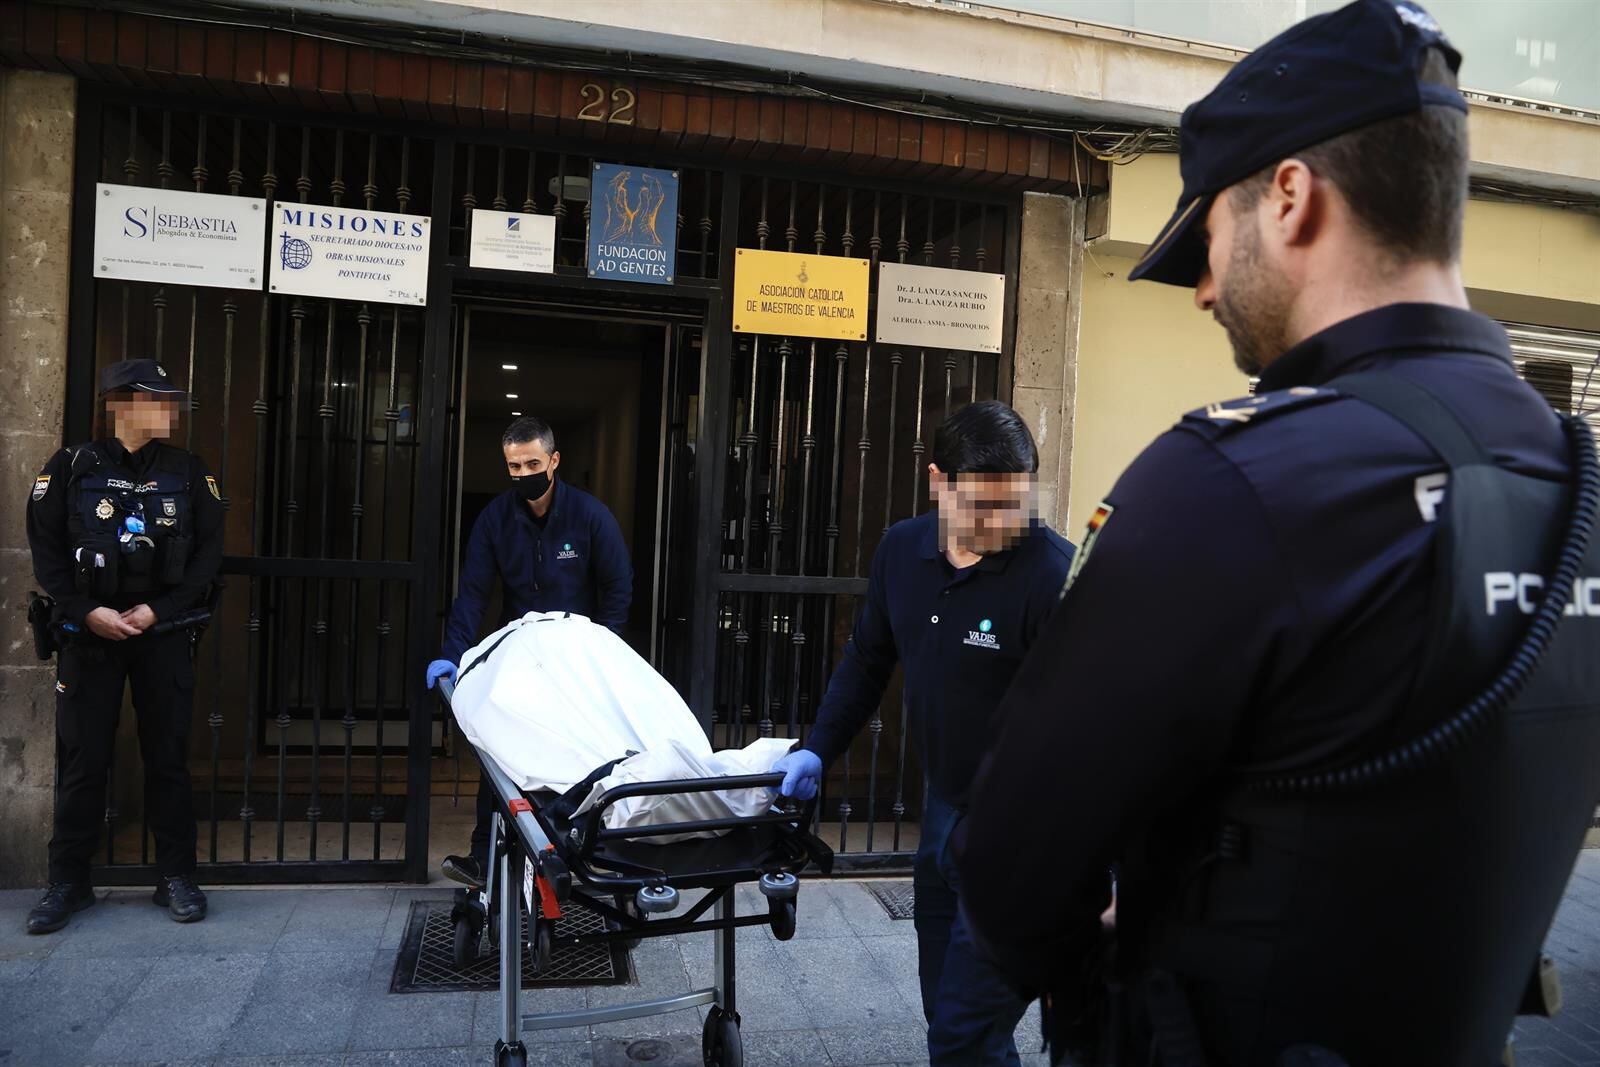 23/01/2024 Momento en el que sacan el cadáver del canónigo de su domicilio en València
POLITICA COMUNIDAD VALENCIANA ESPAÑA EUROPA VALENCIA SOCIEDAD
ROBER SOLSONA/EUROPA PRESS
